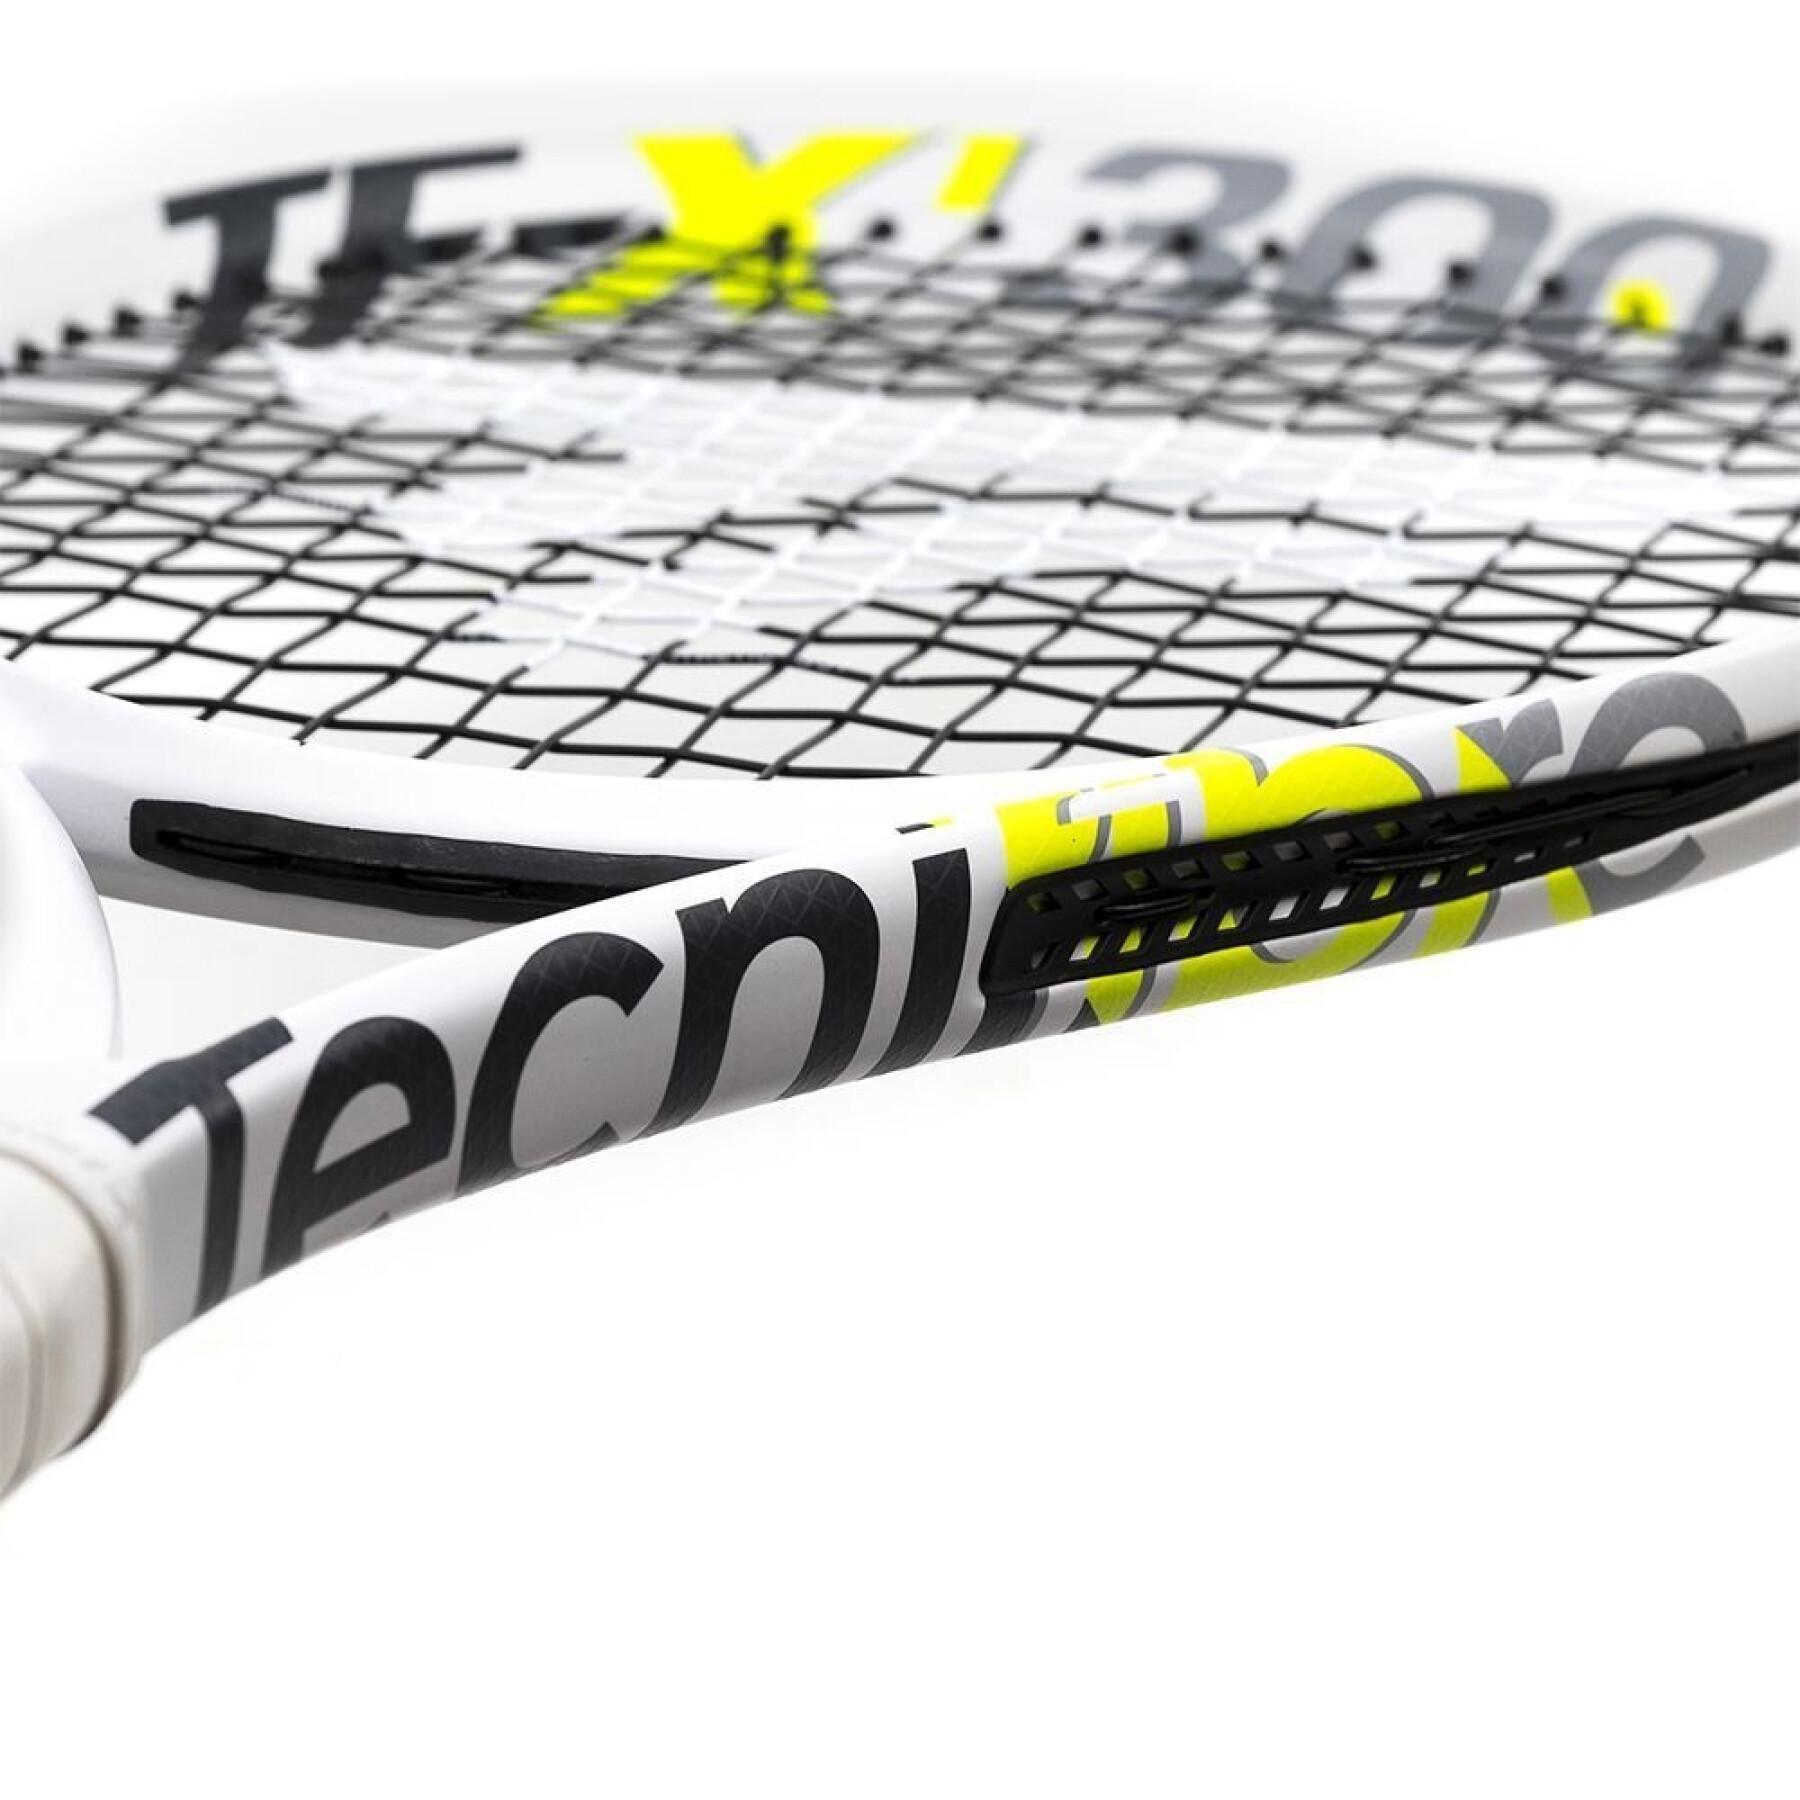 Tennis racket Tecnifibre TF-X1 300 (unstrung)